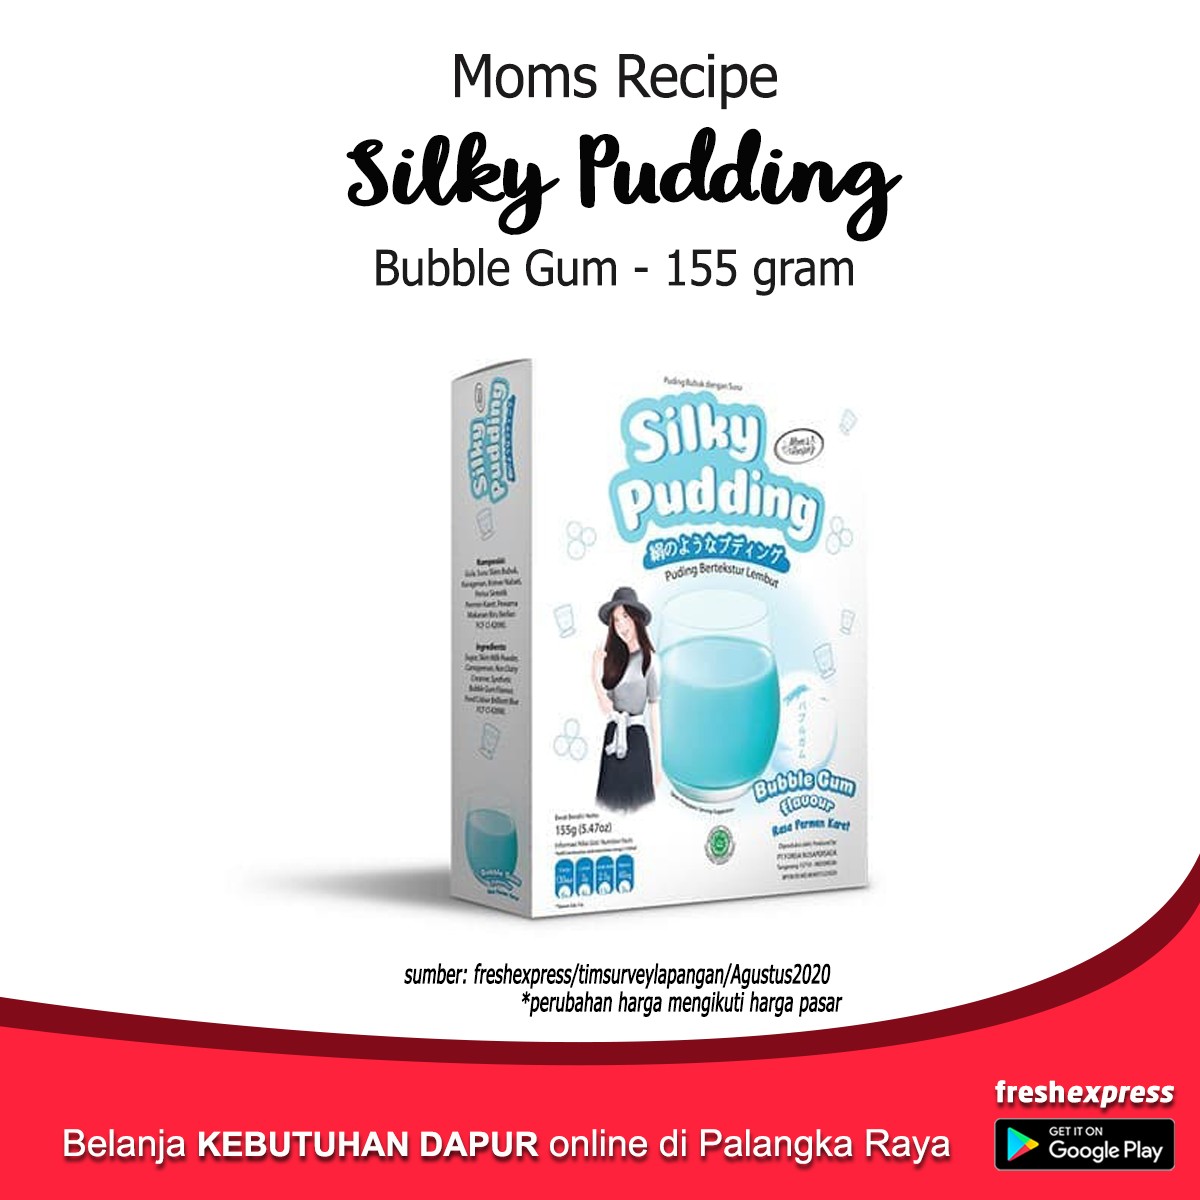 Moms Recipe Silky Pudding Bubble Gum 155 Gram